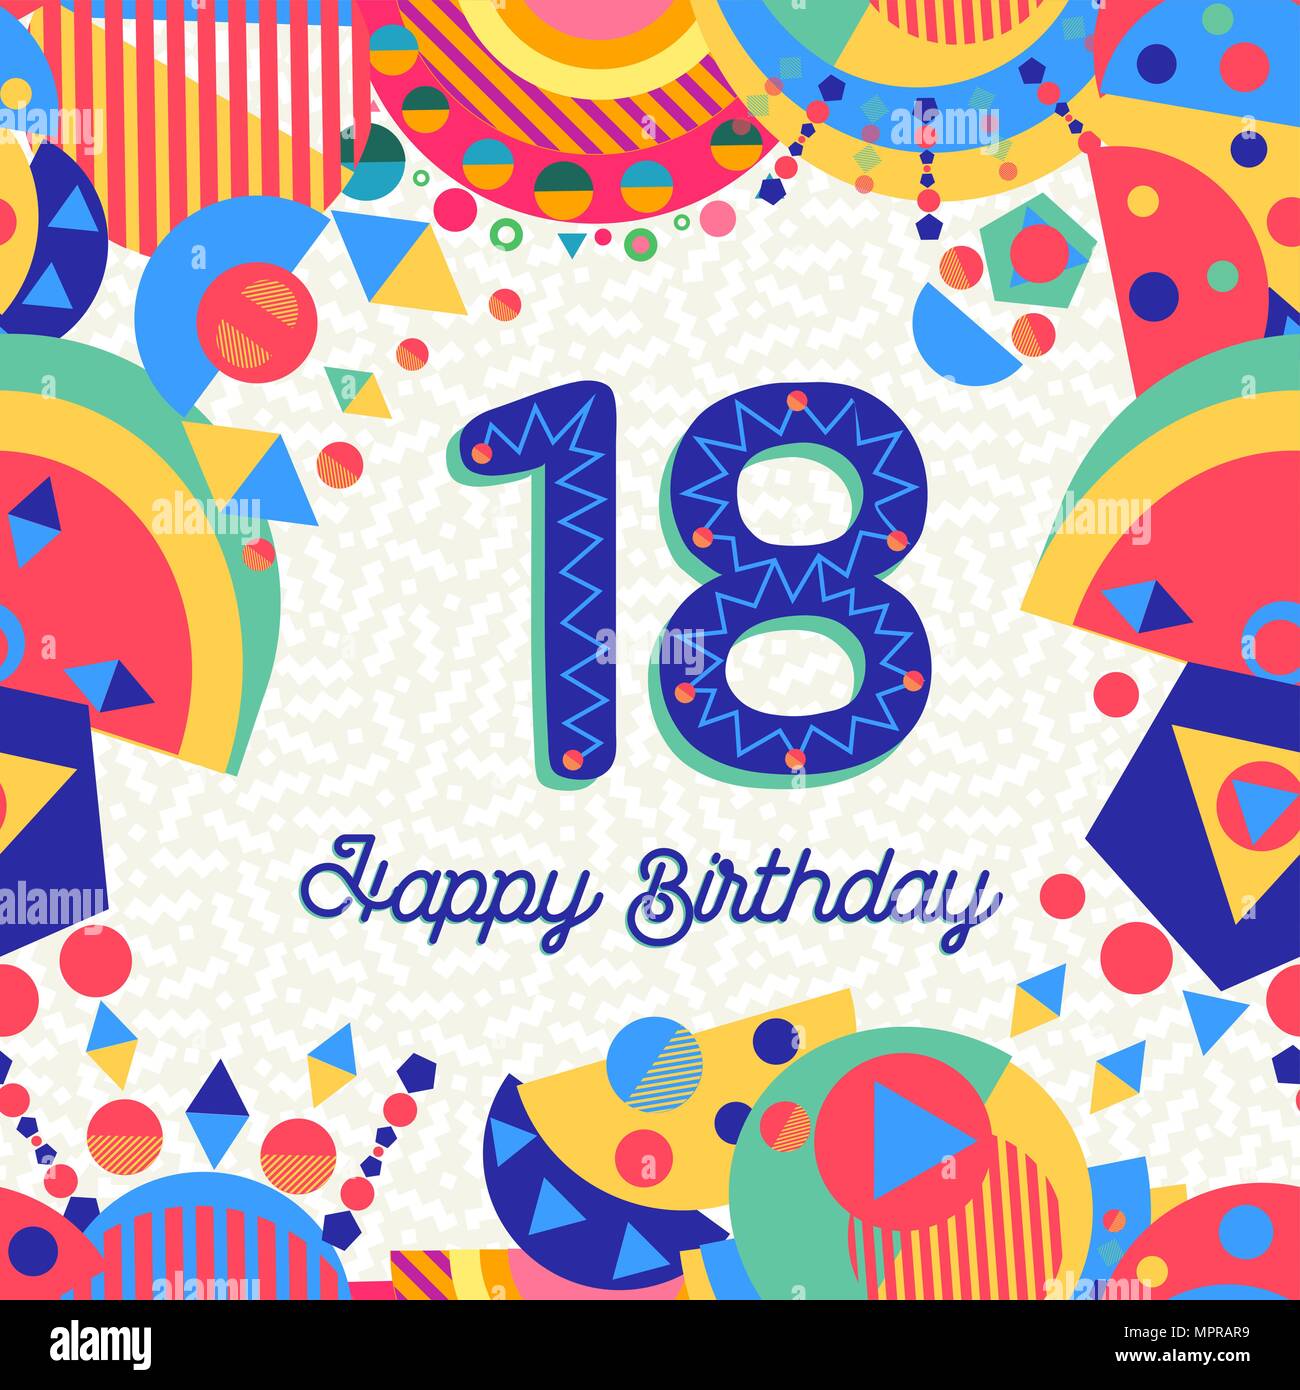 Buon Compleanno Diciotto 18 Anno Design Divertente Con Il Numero Di Etichetta Di Testo E Decorazione Colorata Ideale Per L Invito Alla Festa O Biglietto Di Auguri Eps10 Vettore Immagine E Vettoriale